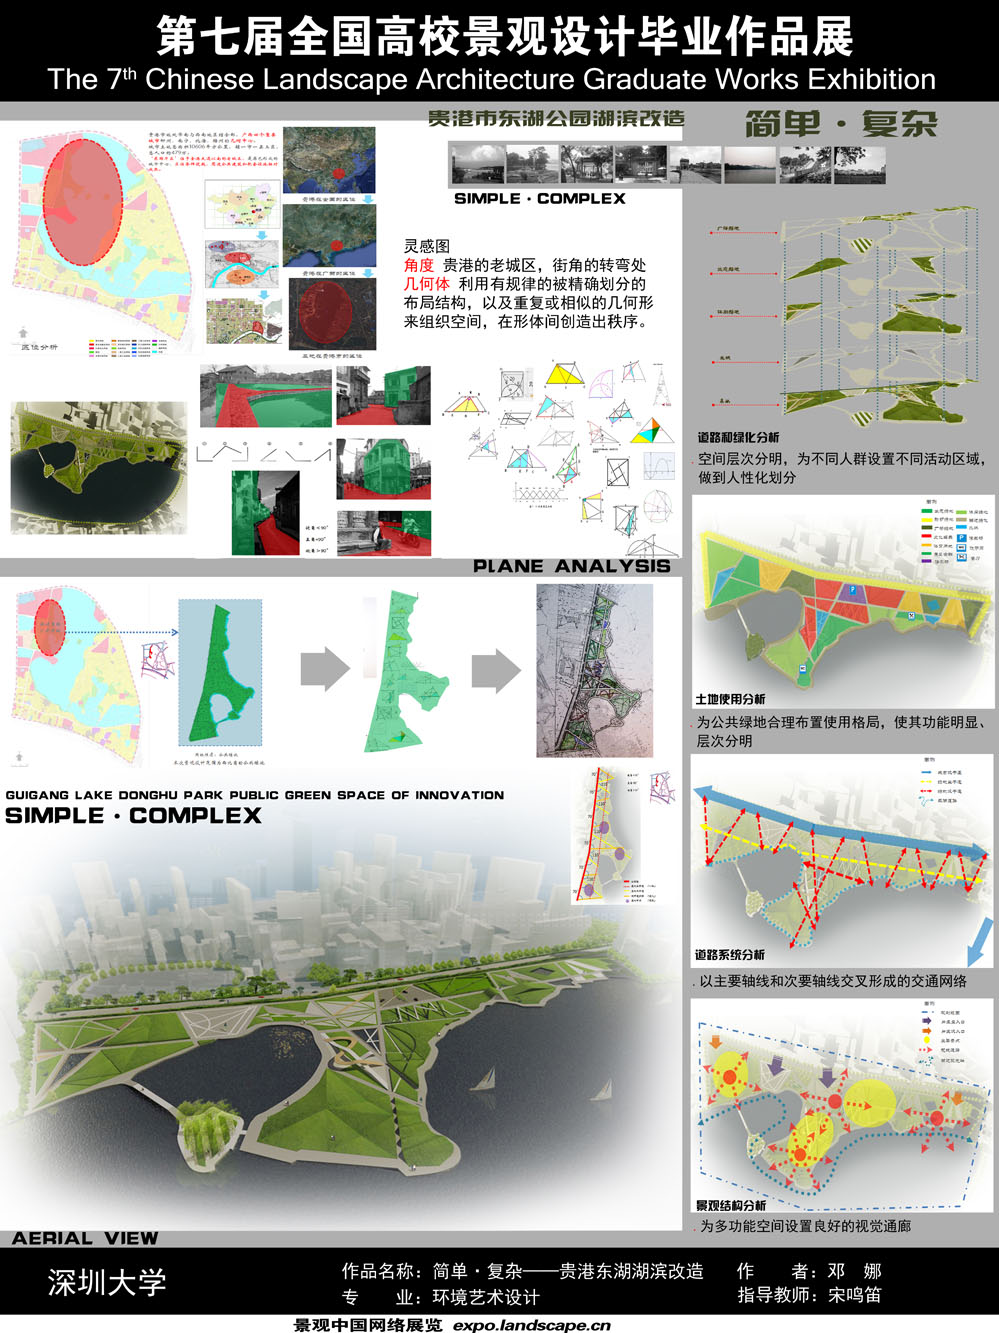 贵港东湖景观设计——简单·复杂-1